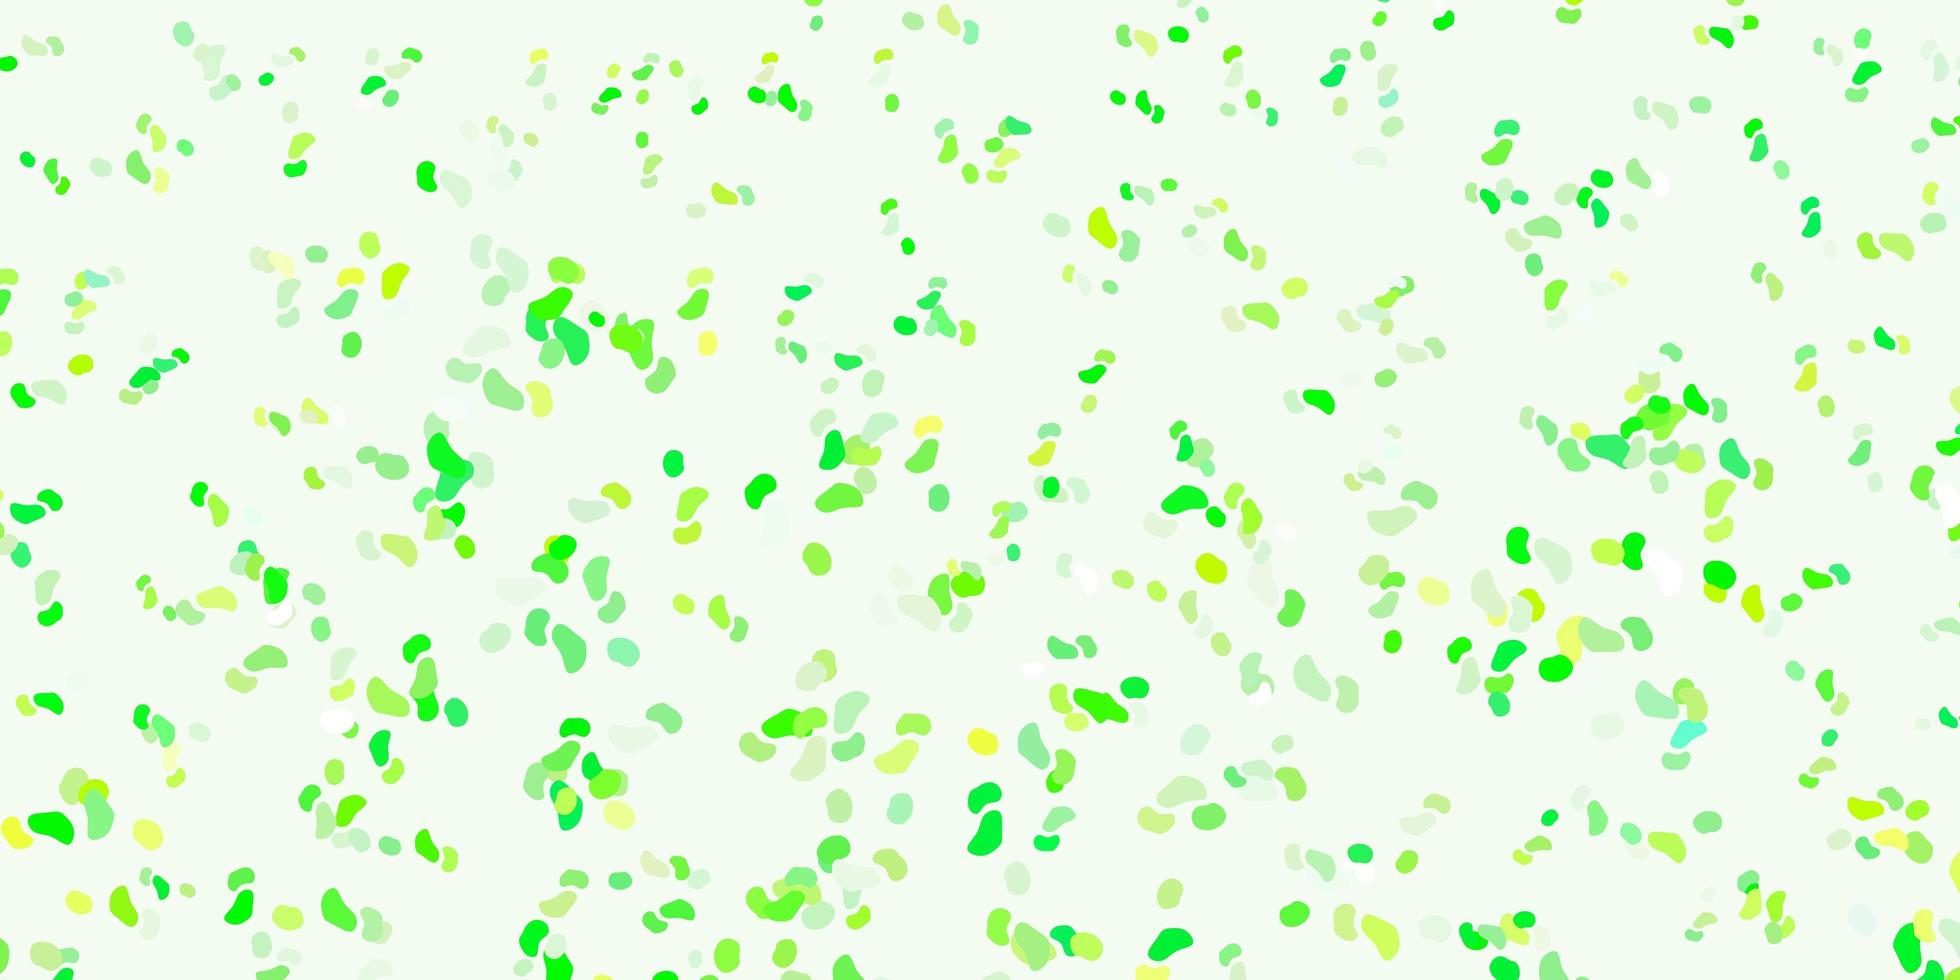 ljusgrön, gul vektorbakgrund med kaotiska former. vektor